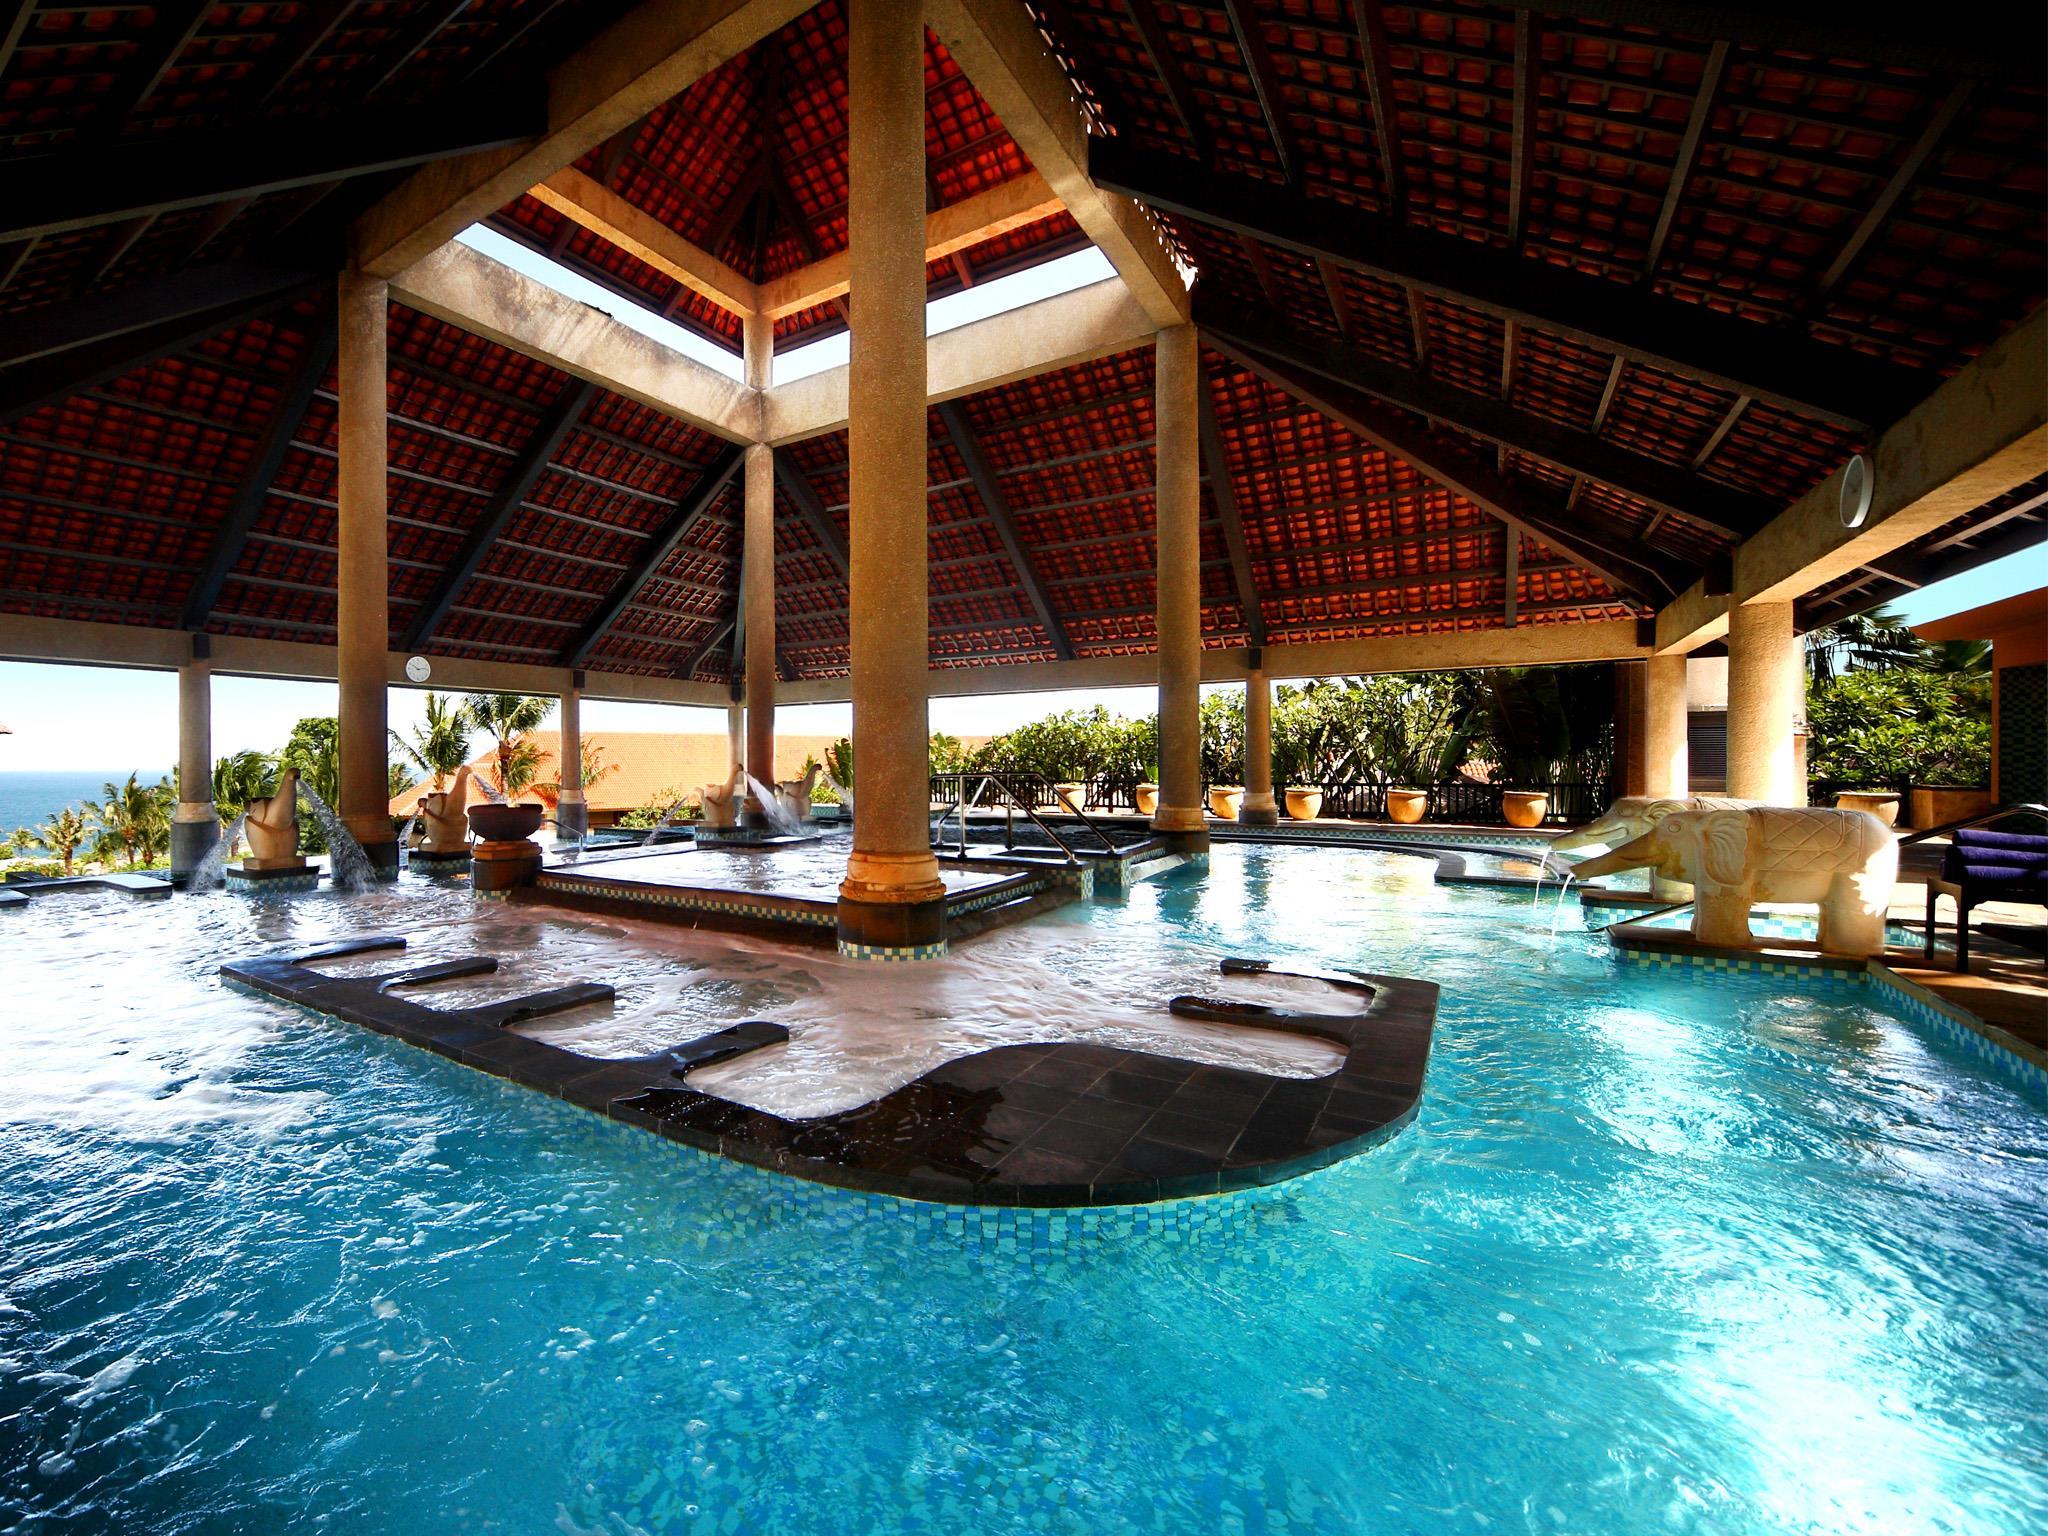 巴厘岛阿雅娜水疗度假酒店